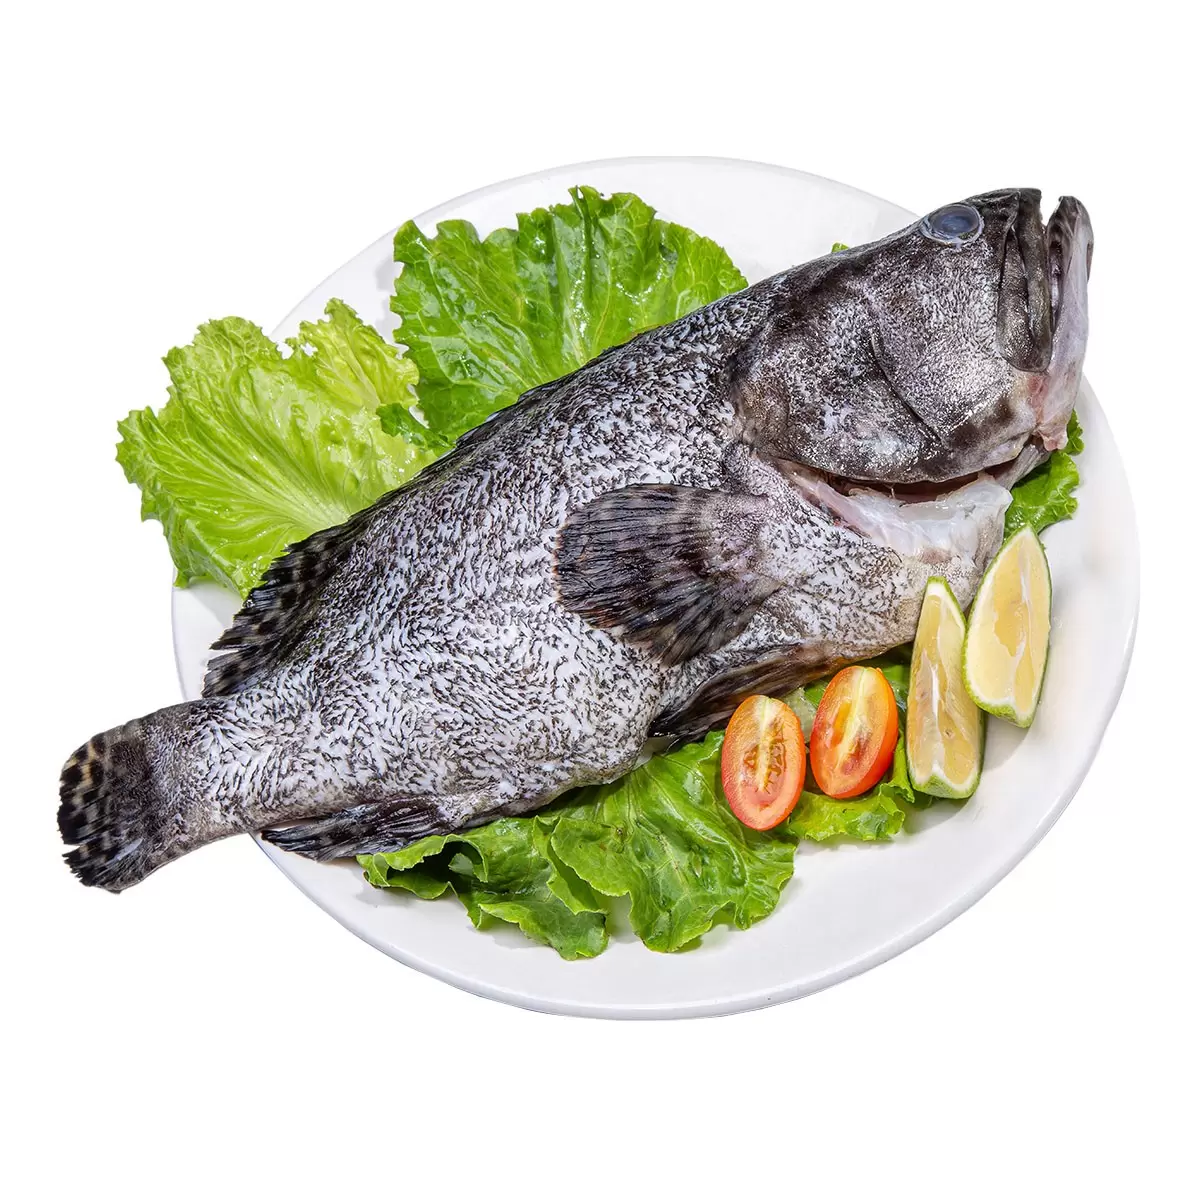 龍虎石斑魚 1.2-1.6公斤